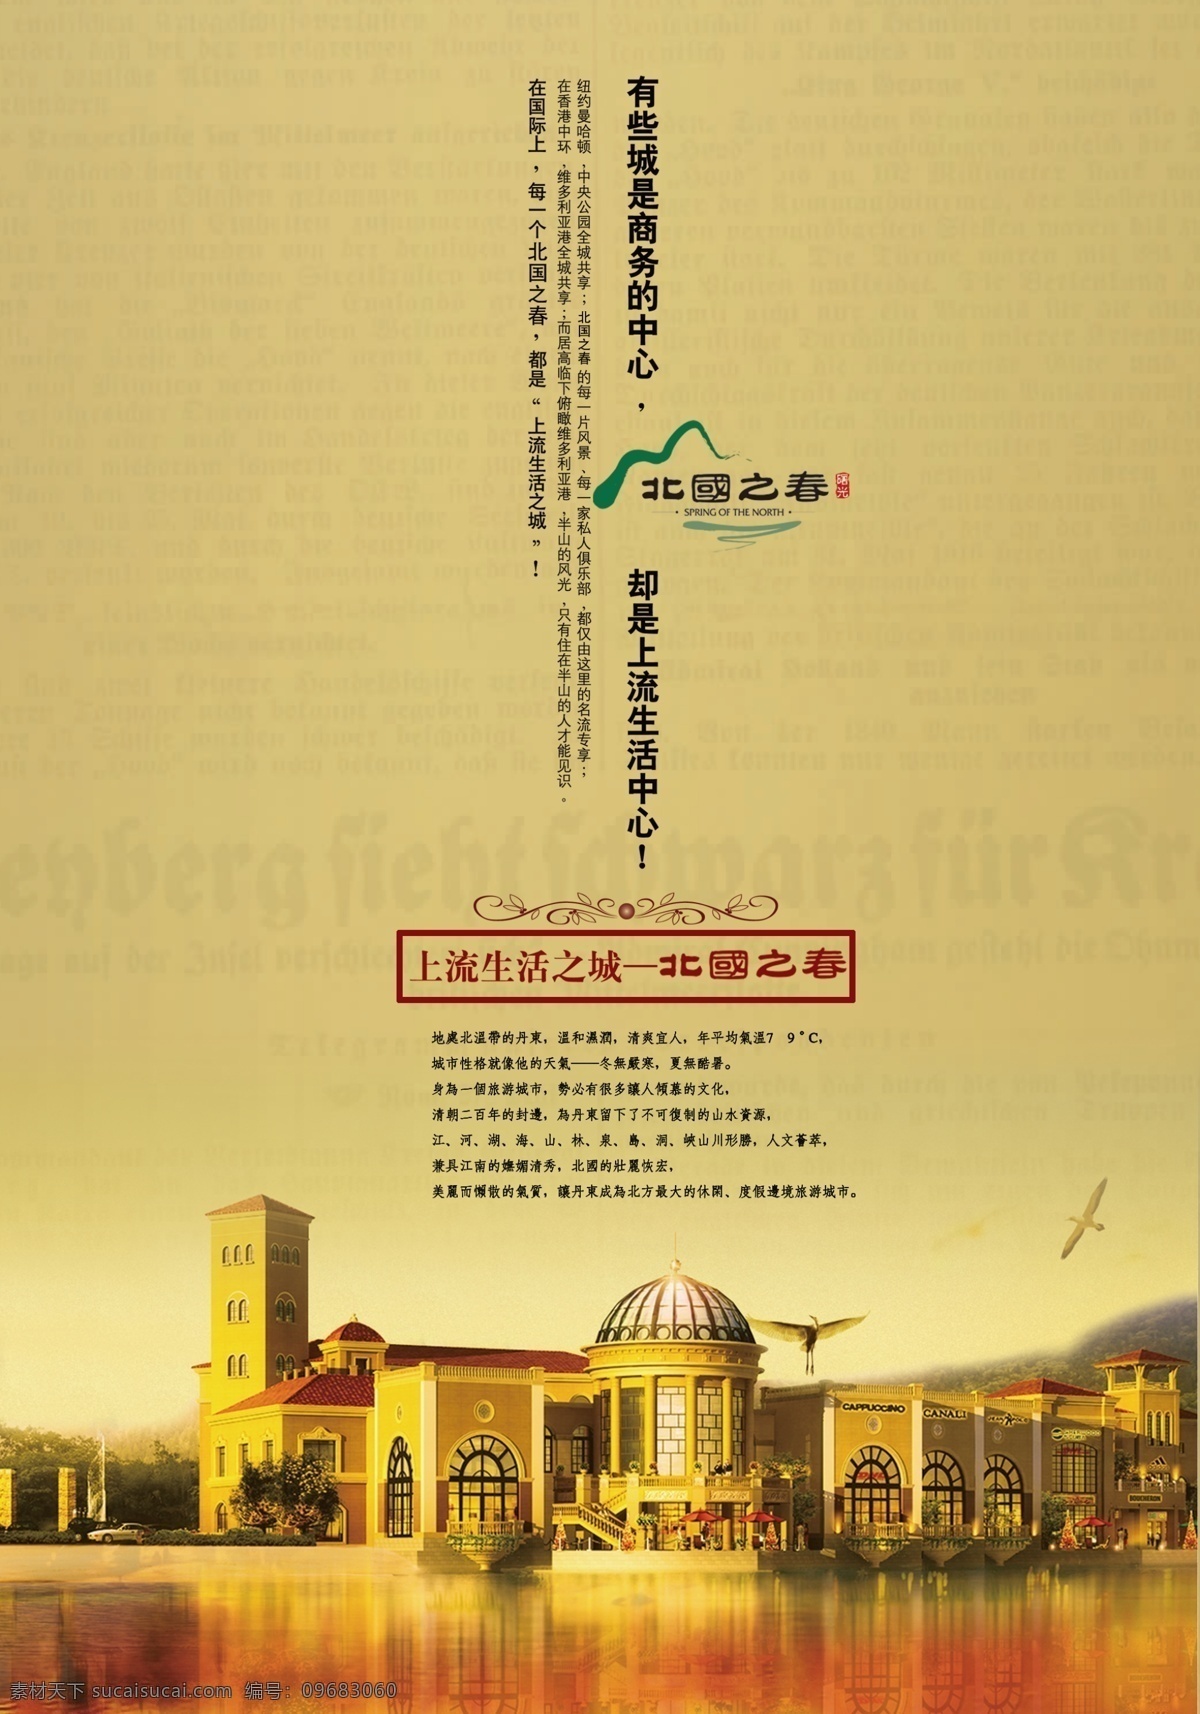 上海北国之春 房地产广告 房地产模板 分层psd 房产广告 地产广告 平面广告 设计素材 房地产业 平面模板 psd源文件 黄色